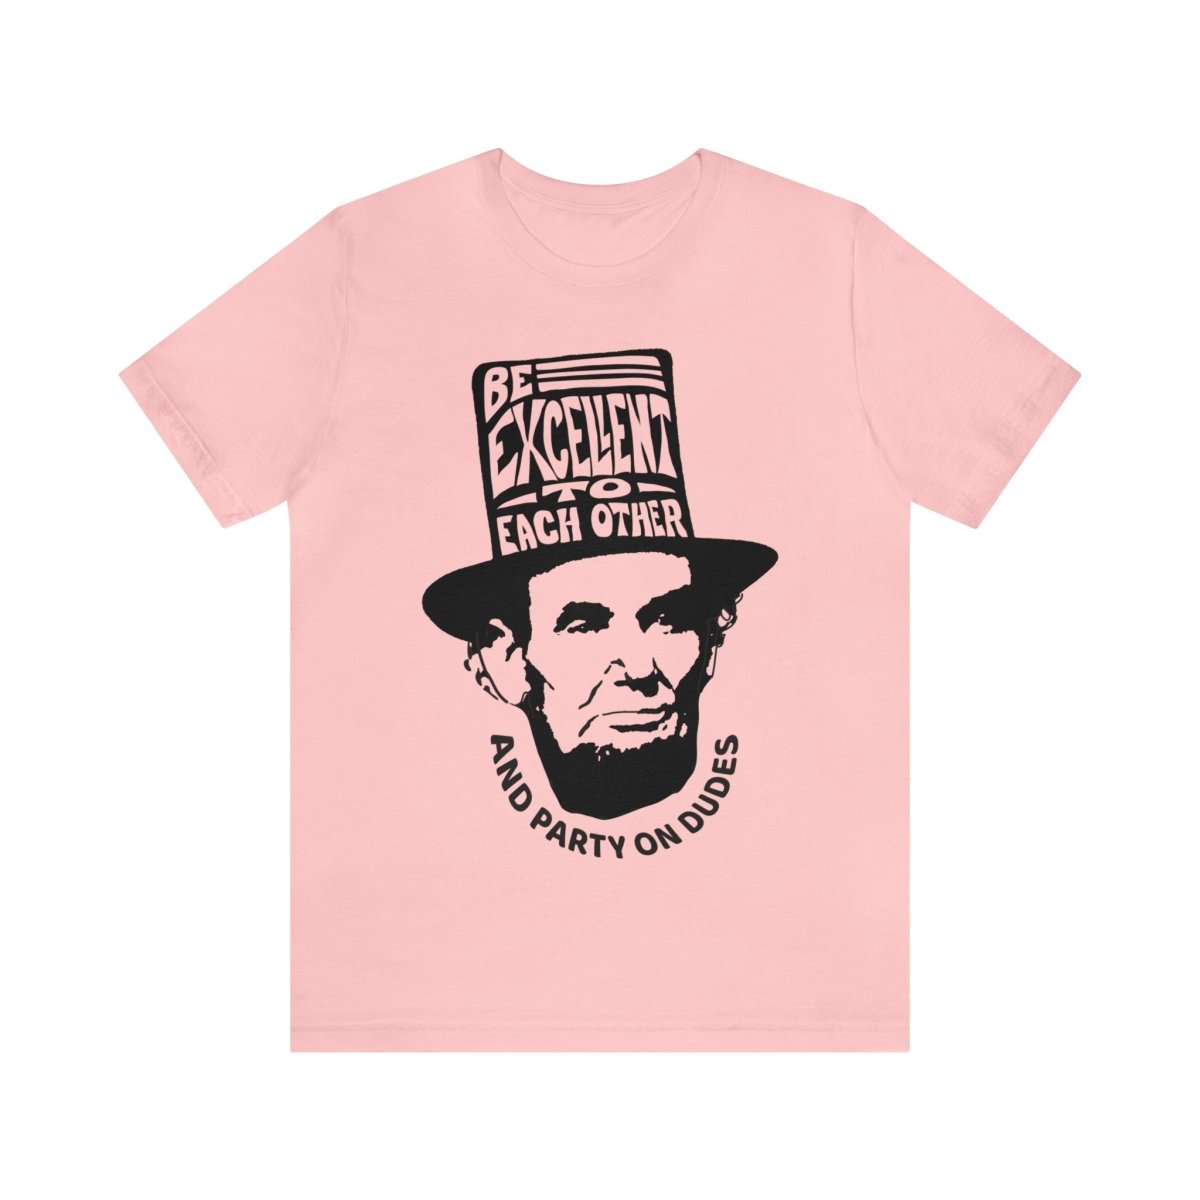 Be Excellent Premium T-Shirt, Triumphant Dudes, Abraham Lincoln, Funny